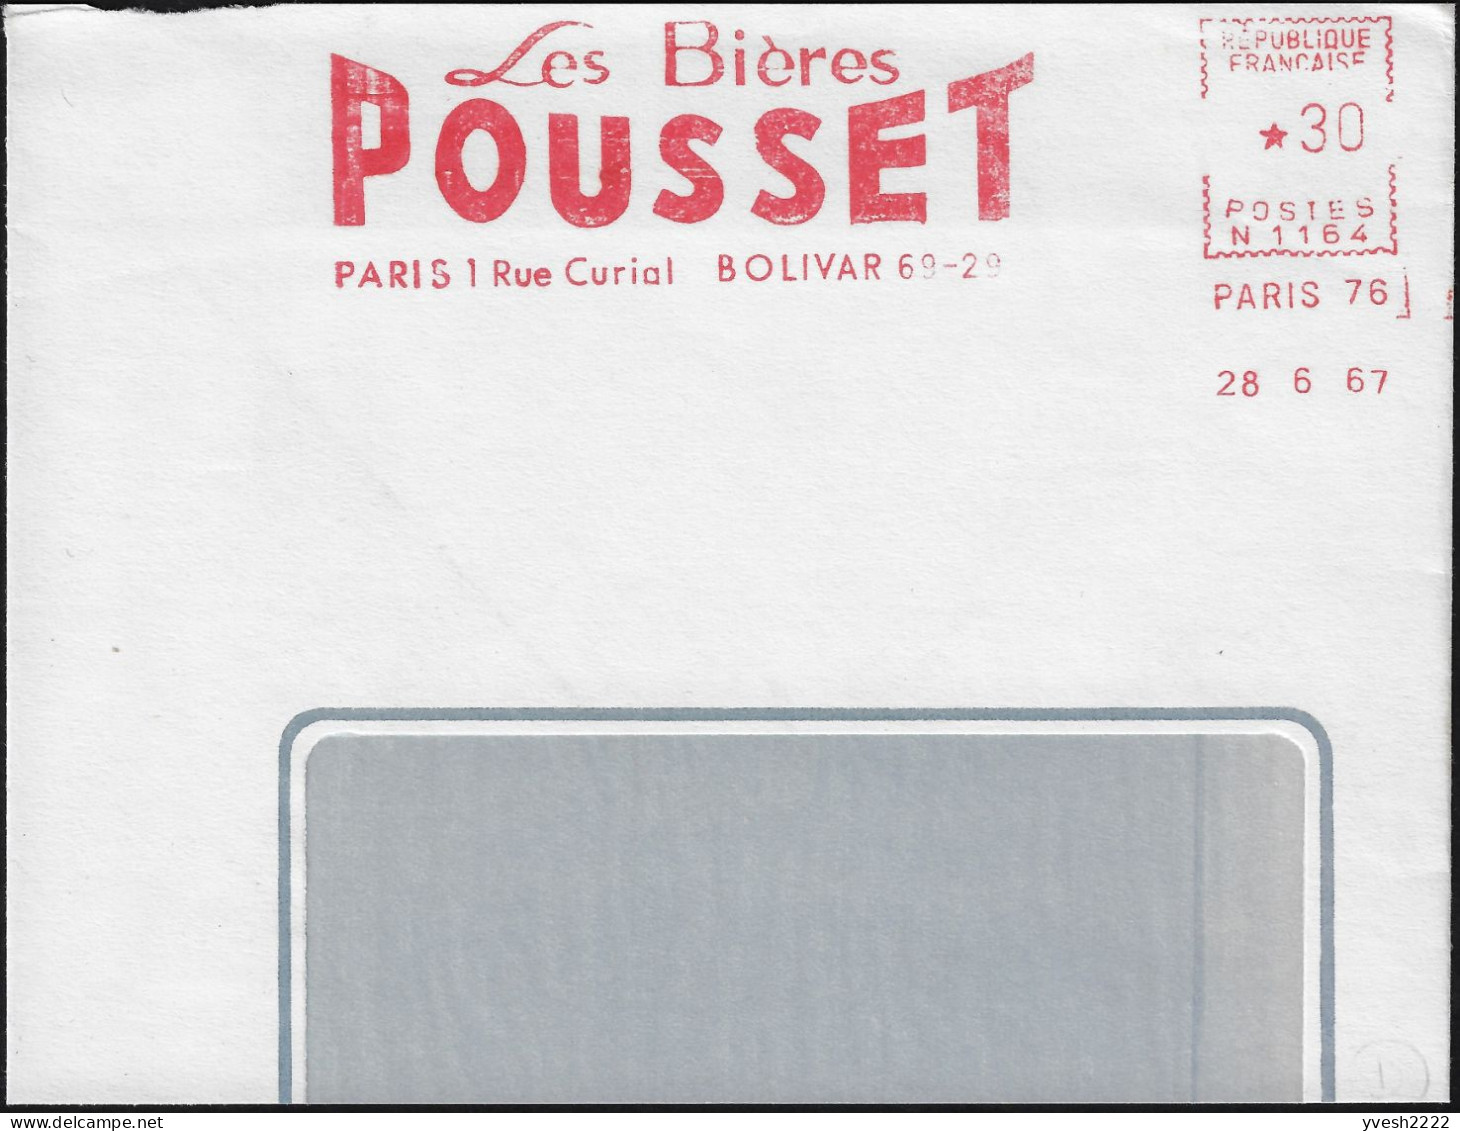 France 1967. Empreinte De Machine à Affranchir, EMA. Les Bières Pousset, Paris 1. Bolivar 69-29 - Bier